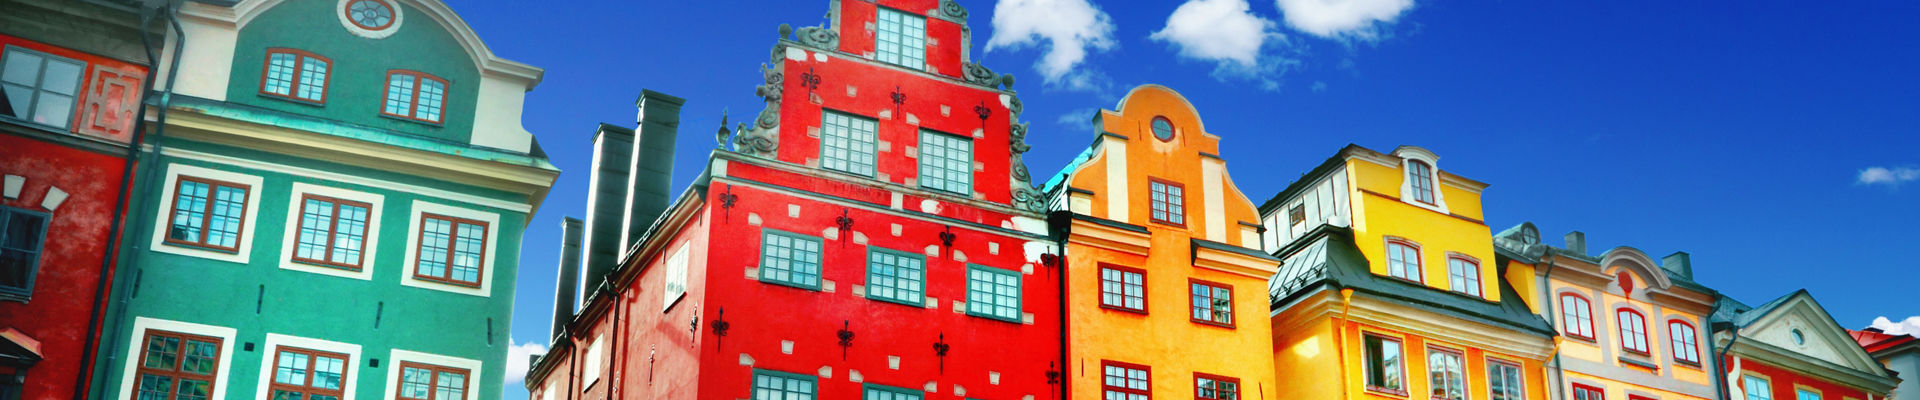 Frentes coloridas de prédios na rua histórica